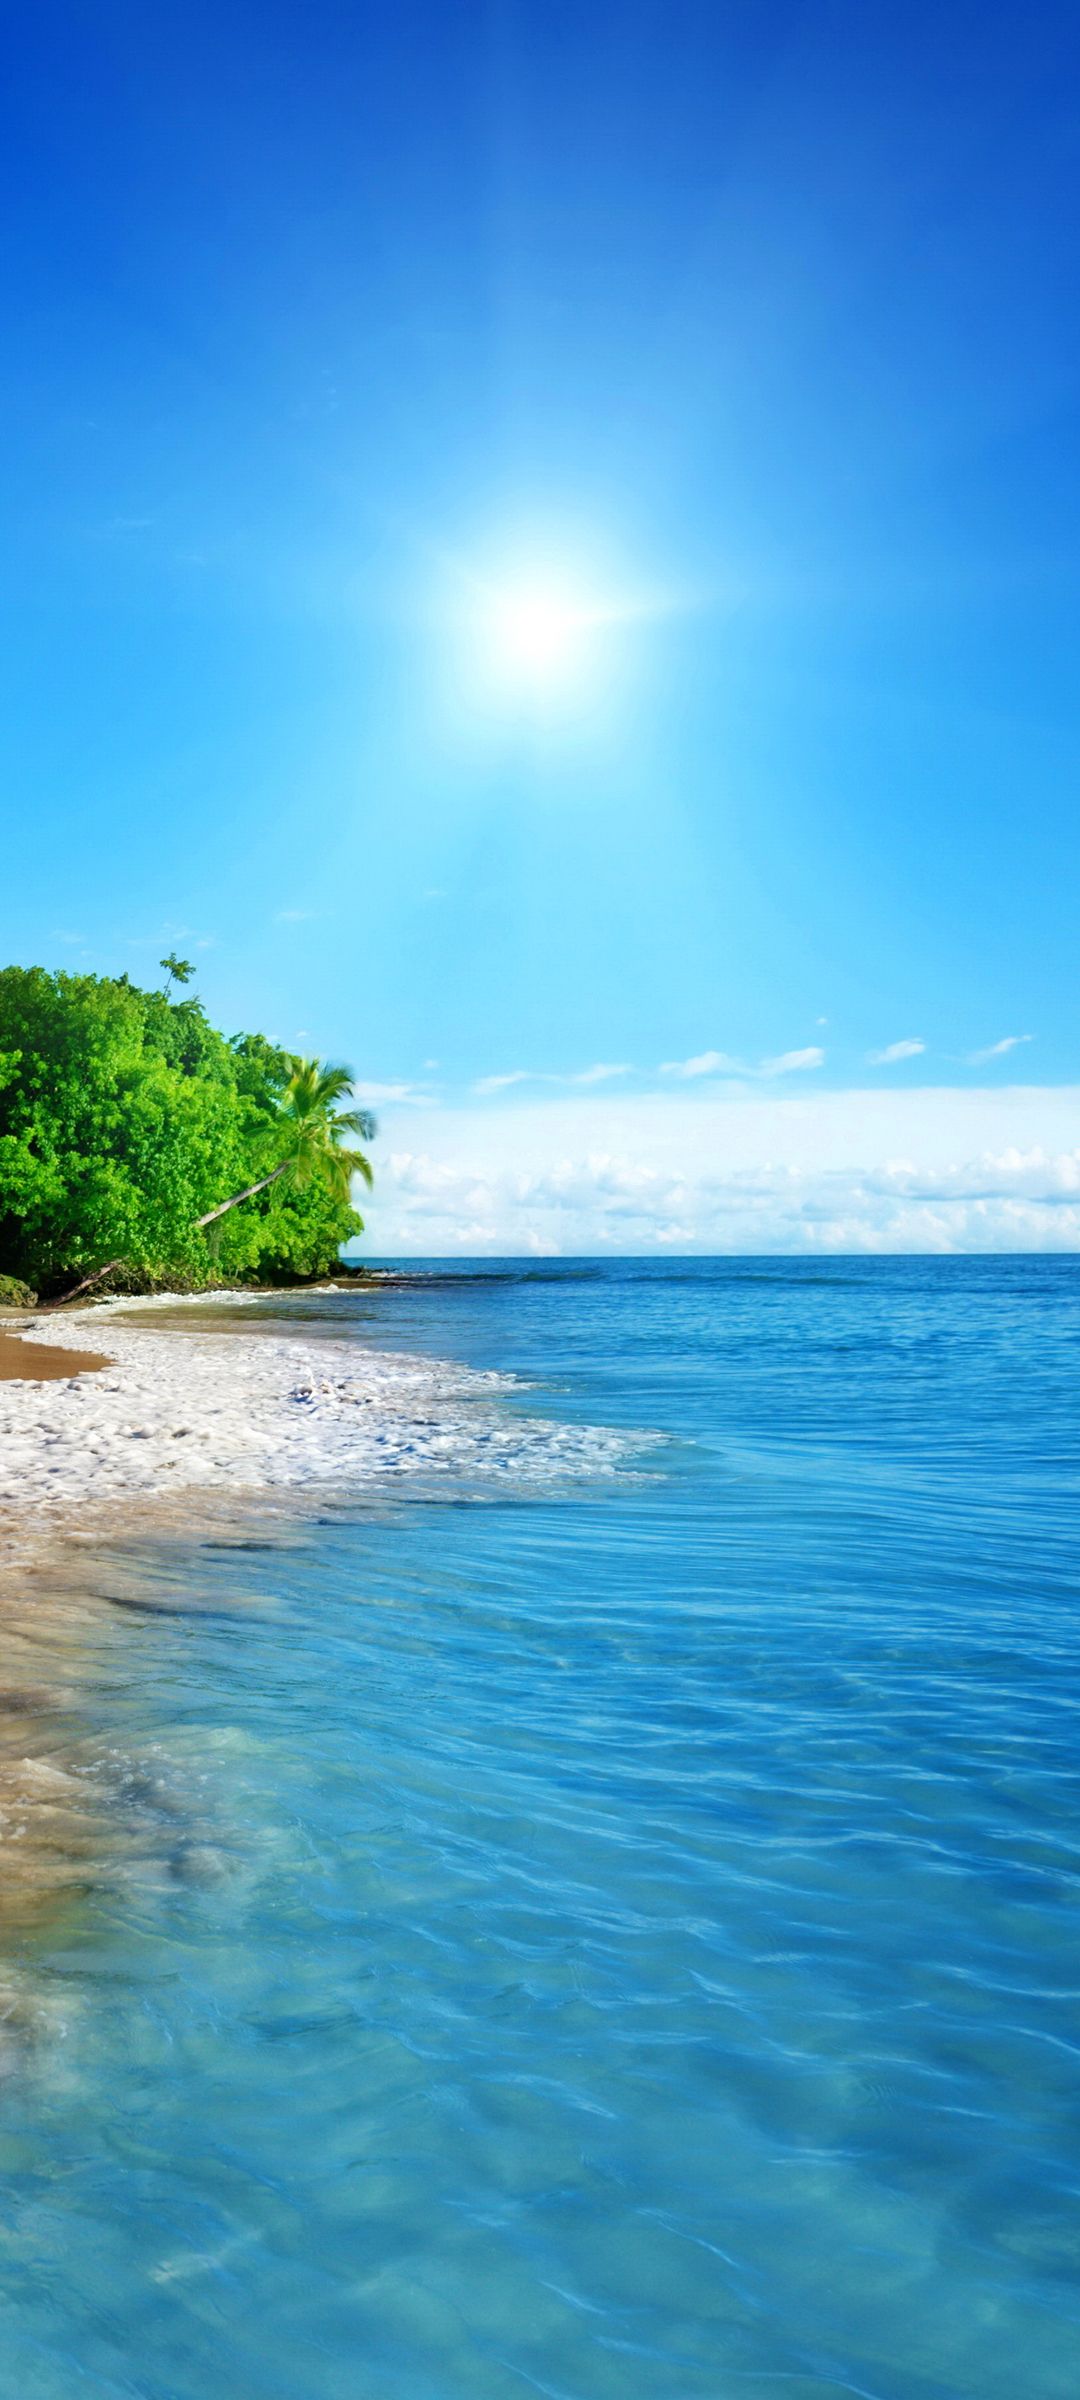 大海的海滩边椰子树与洁白海浪